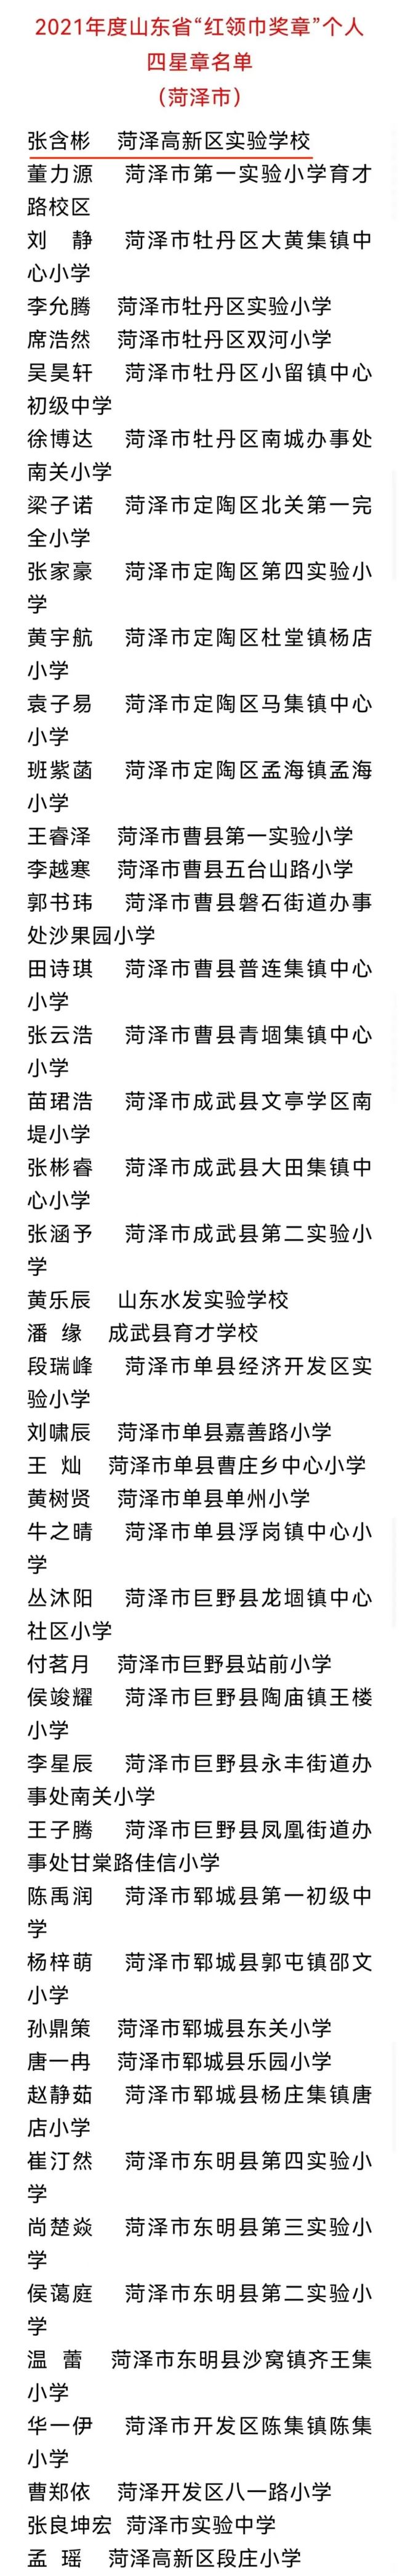 山师中铁实验学校师生在山东省、菏泽市、高新区不同领域斩获佳绩